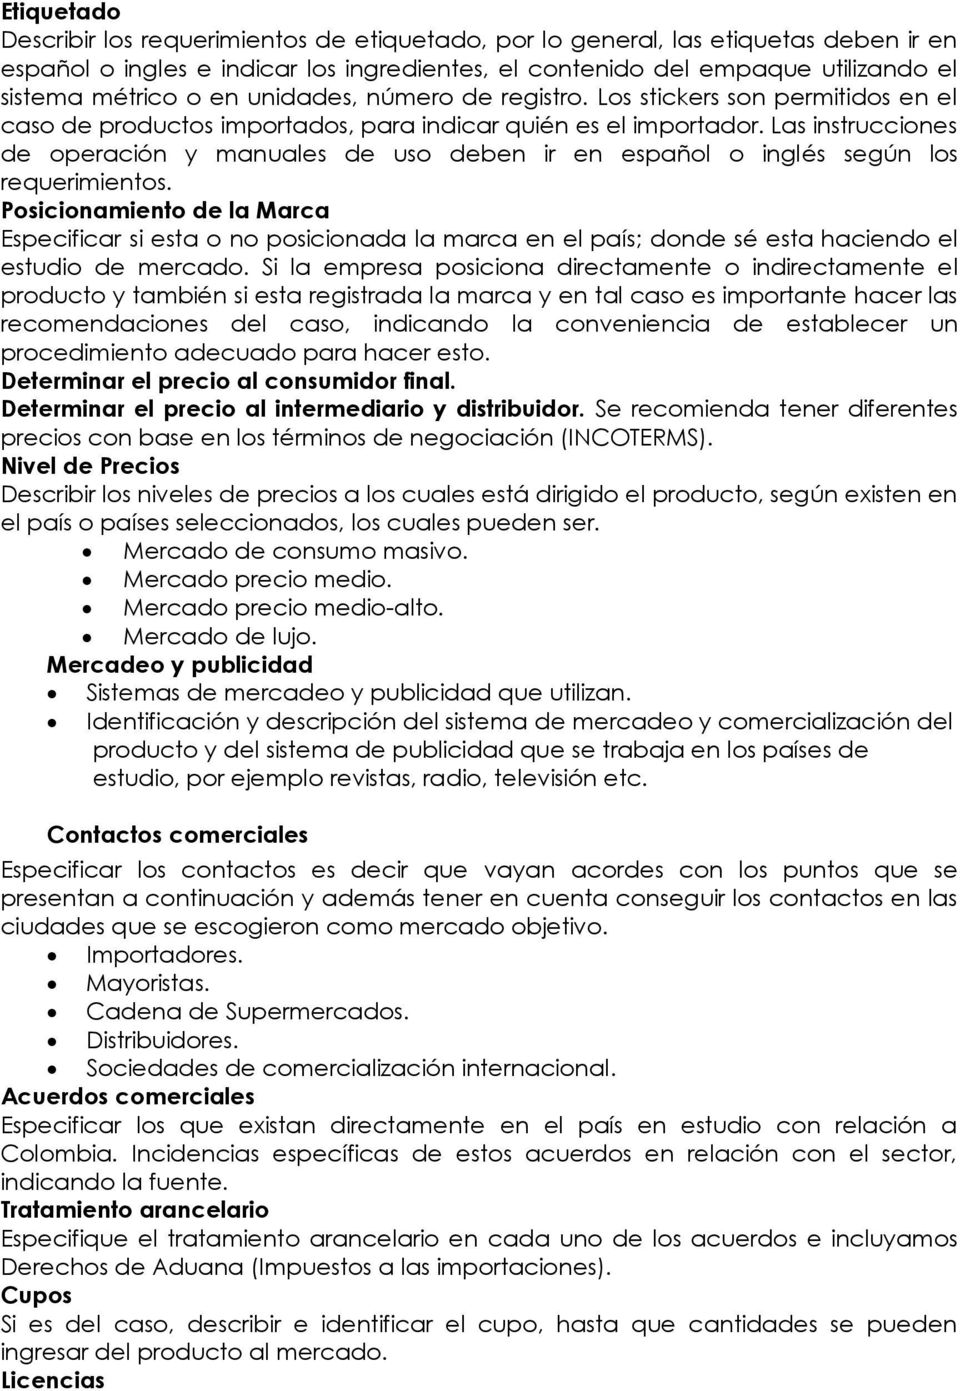 Las instrucciones de operación y manuales de uso deben ir en español o inglés según los requerimientos.